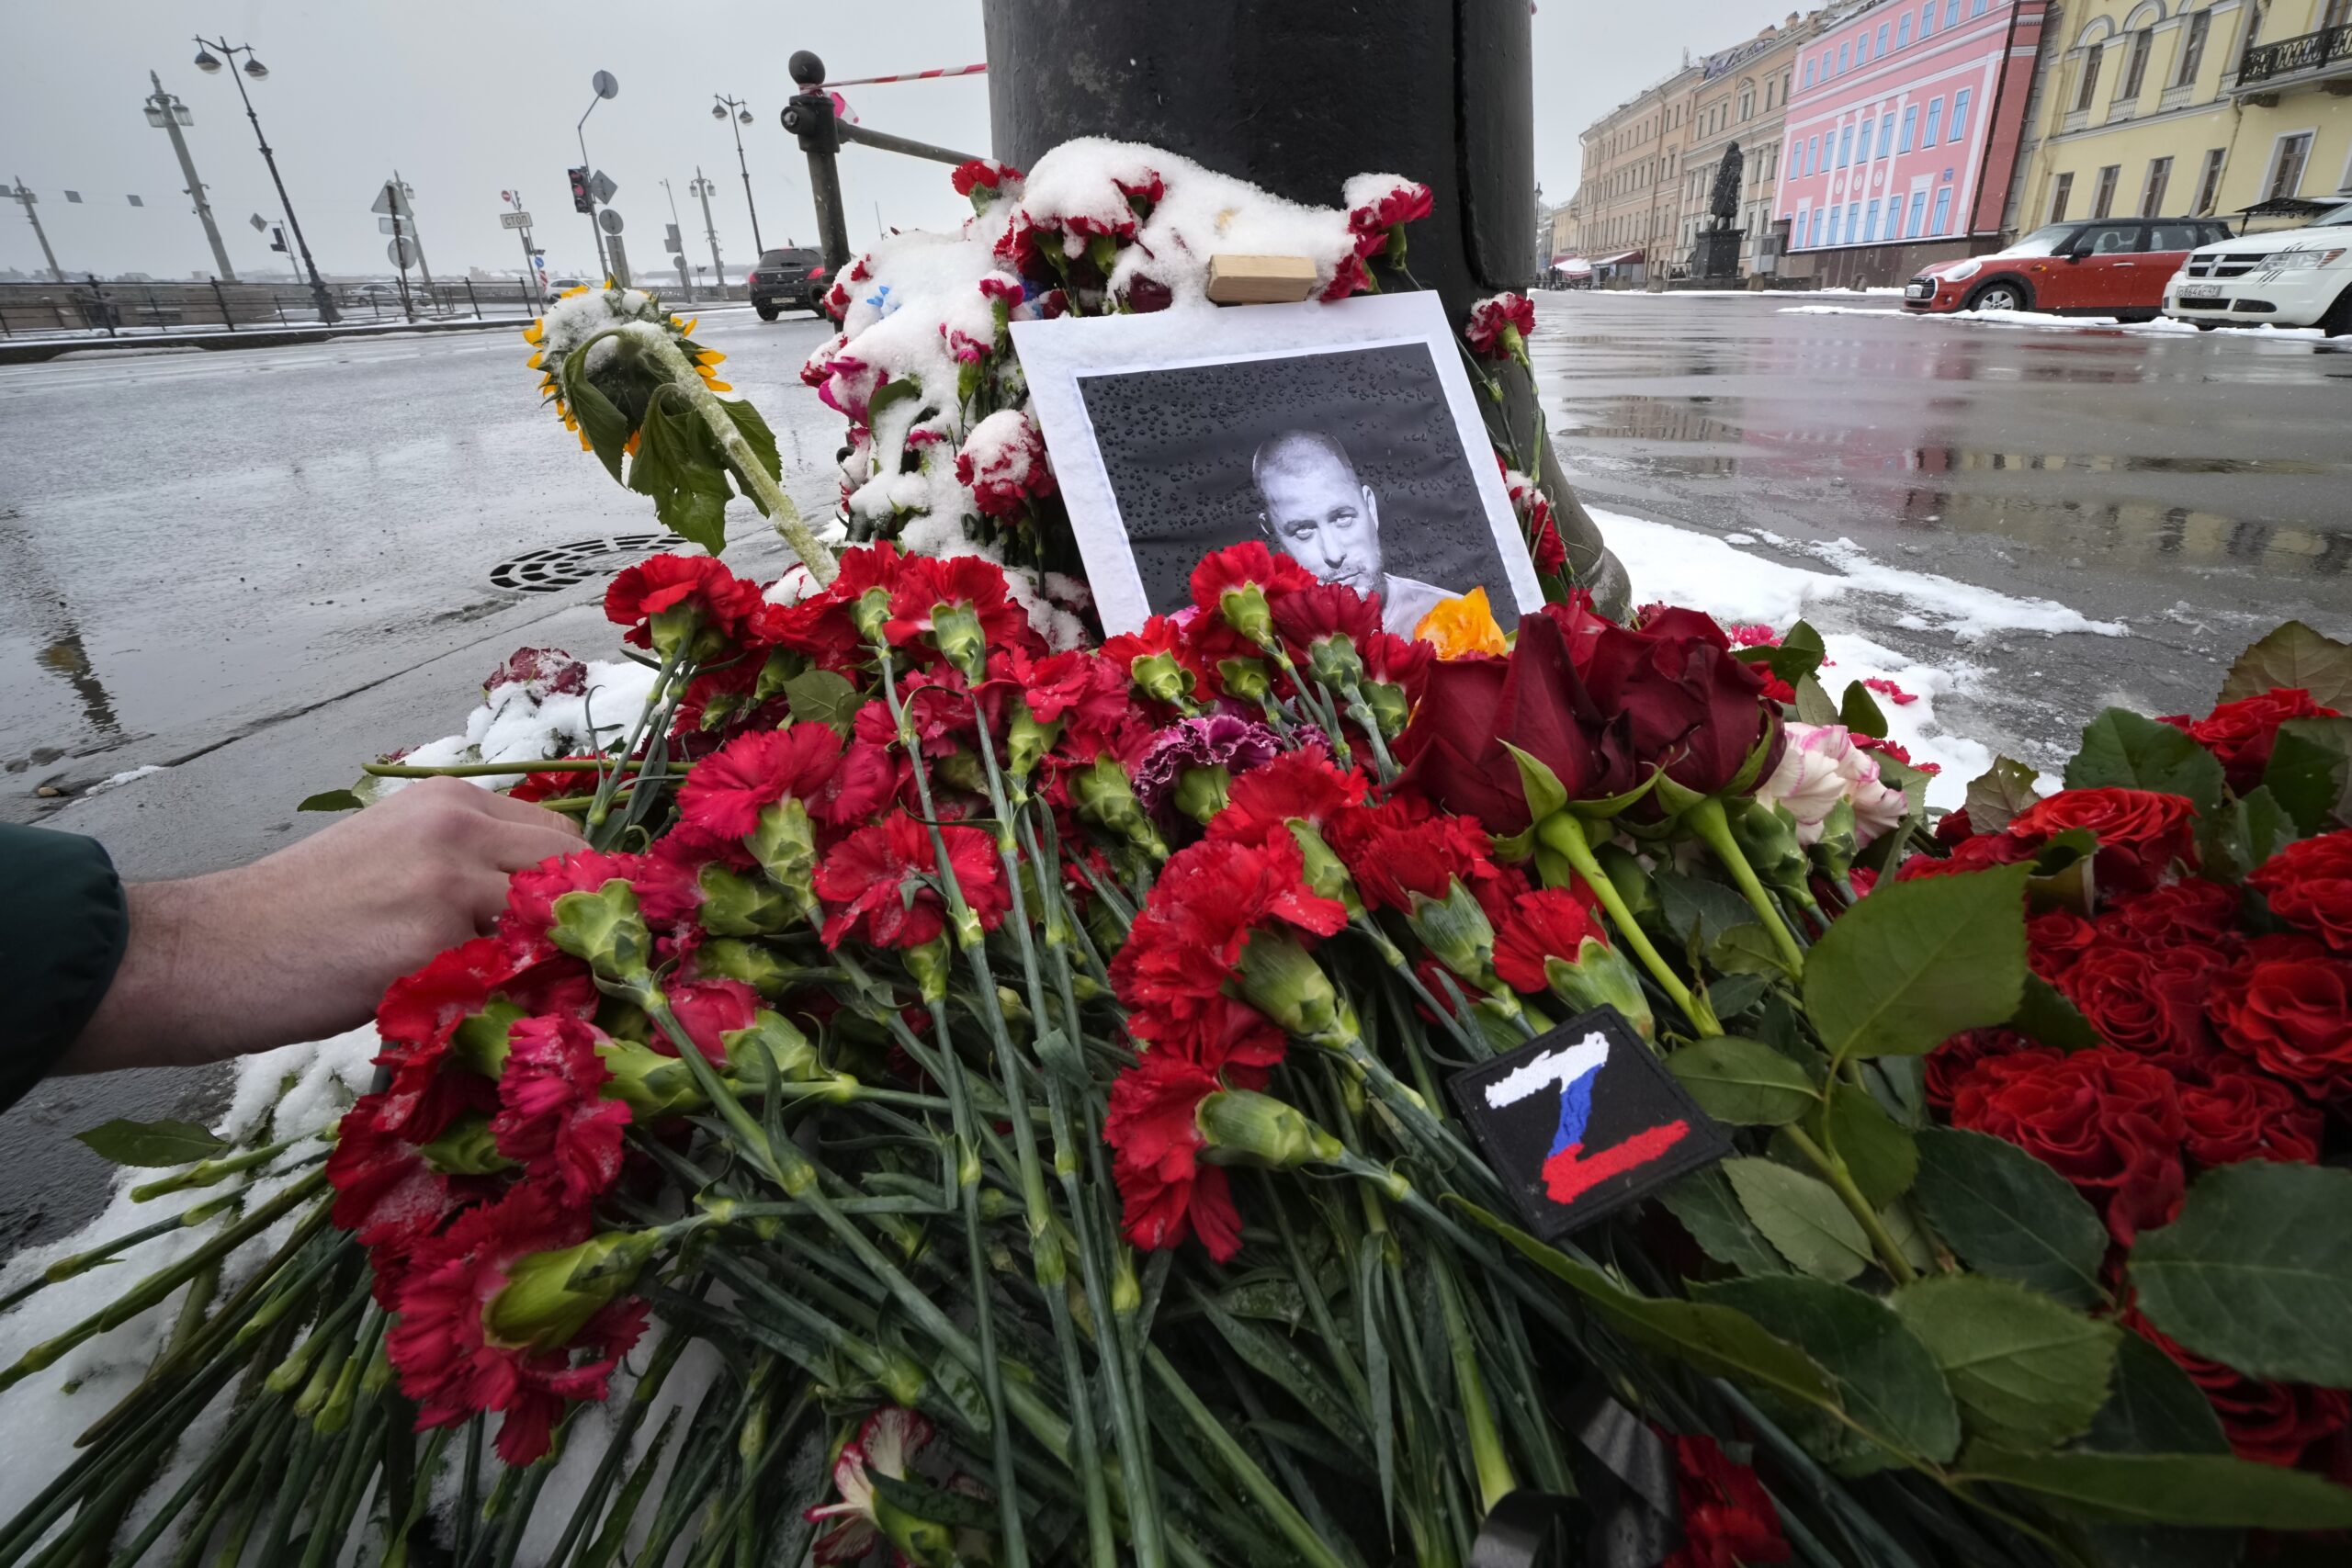 Η στιγμή που το άγαλμα εκρήγνυται στα χέρια του Ρώσου μπλόγκερ – Έρευνα για ανθρωποκτονία